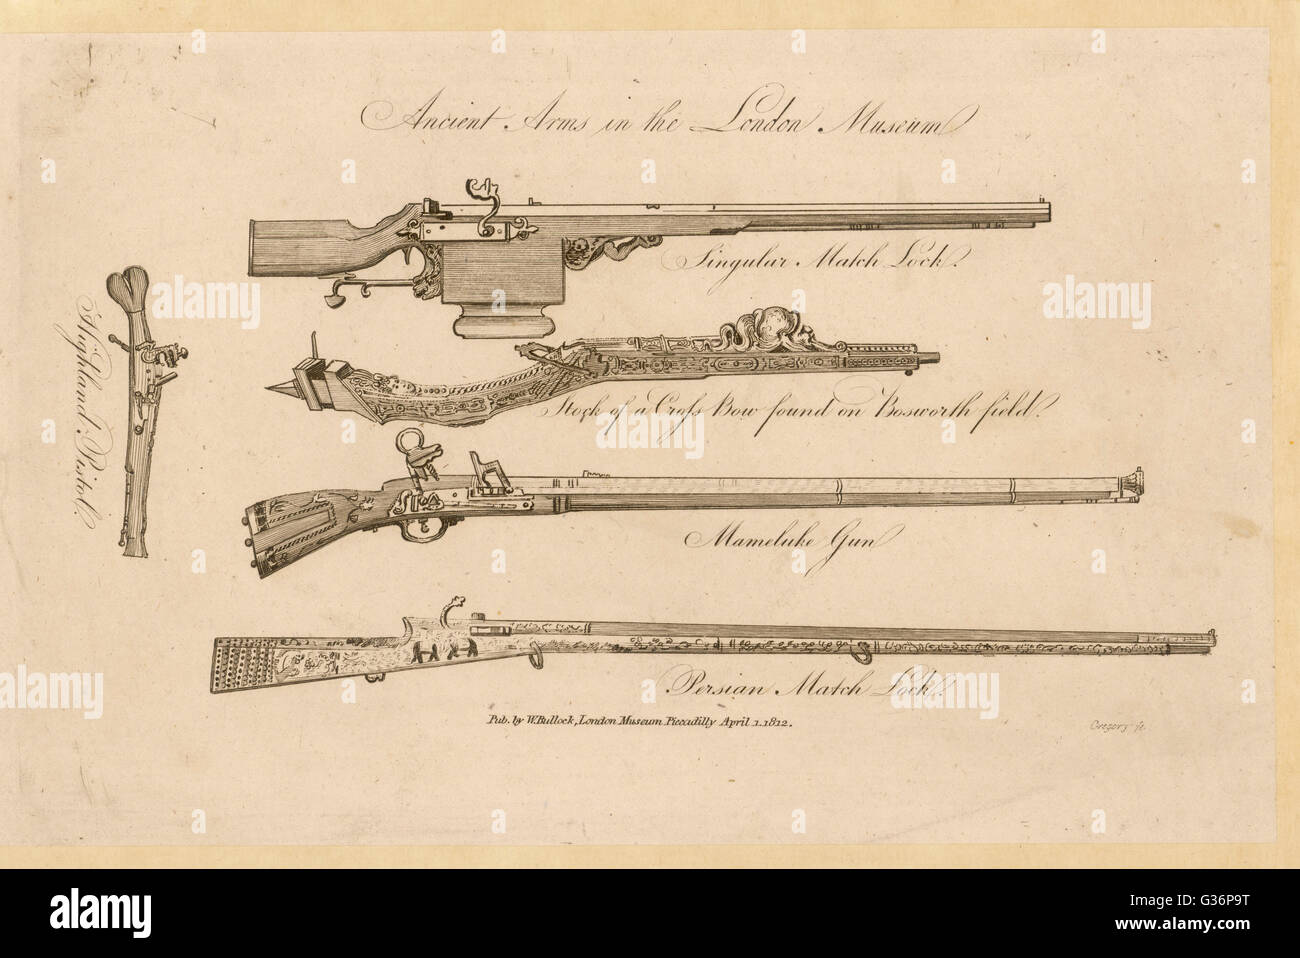 Varias armas de fuego -- Un matchlock Crossbow (Bosworth), una pistola mameluca, persa y una pistola matchlock Highland. Fecha: varios Foto de stock